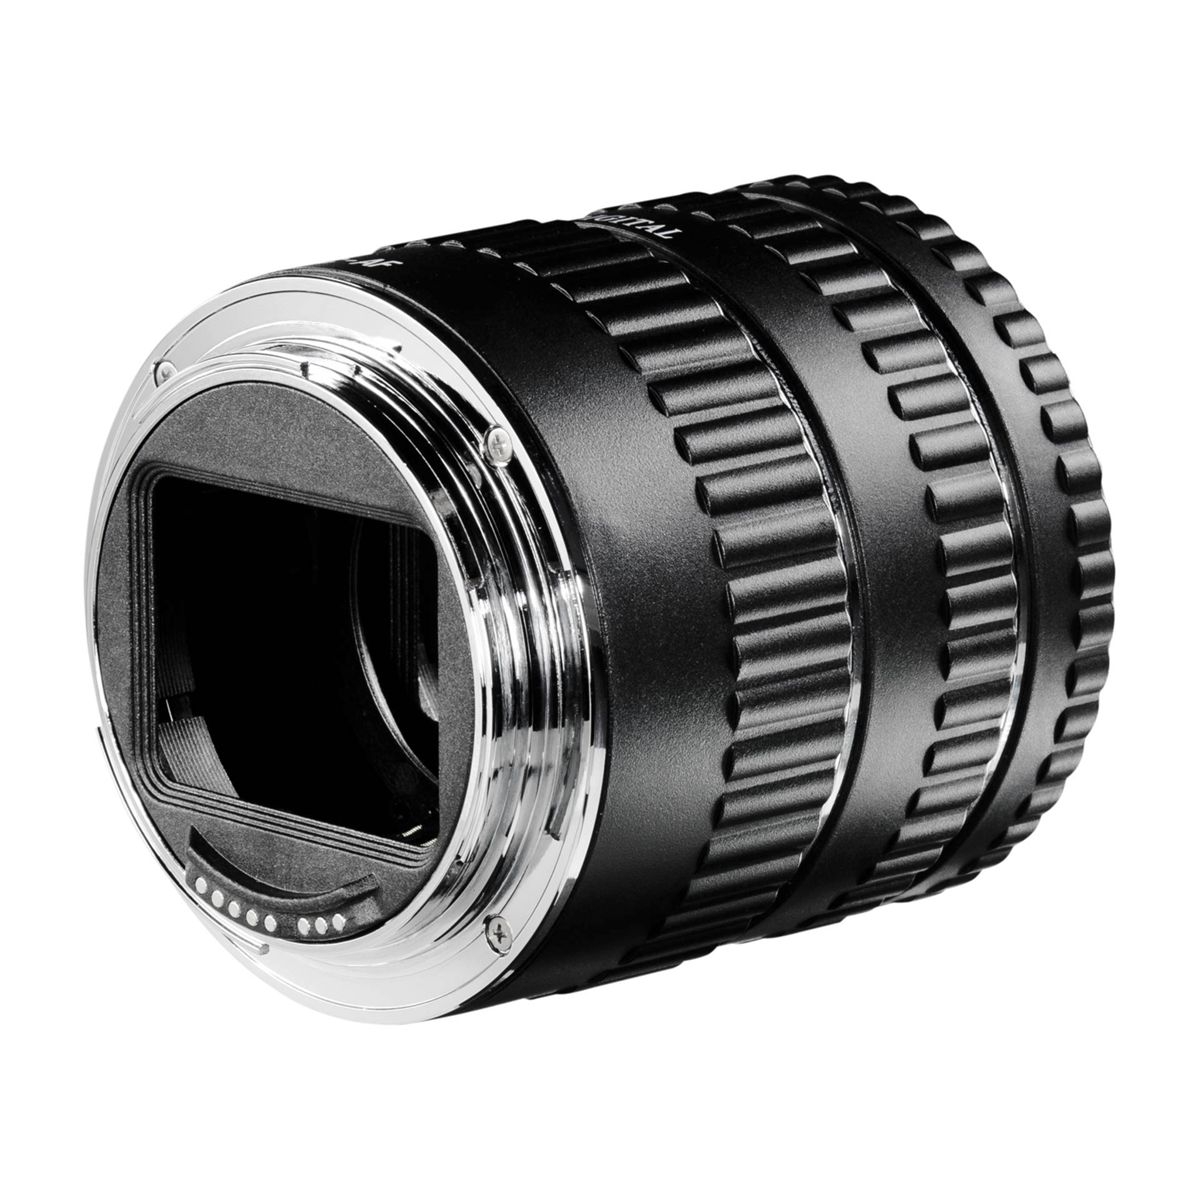 WALIMEX Zwischenringsatz Für Canon Zwischenringsatz, schwarz